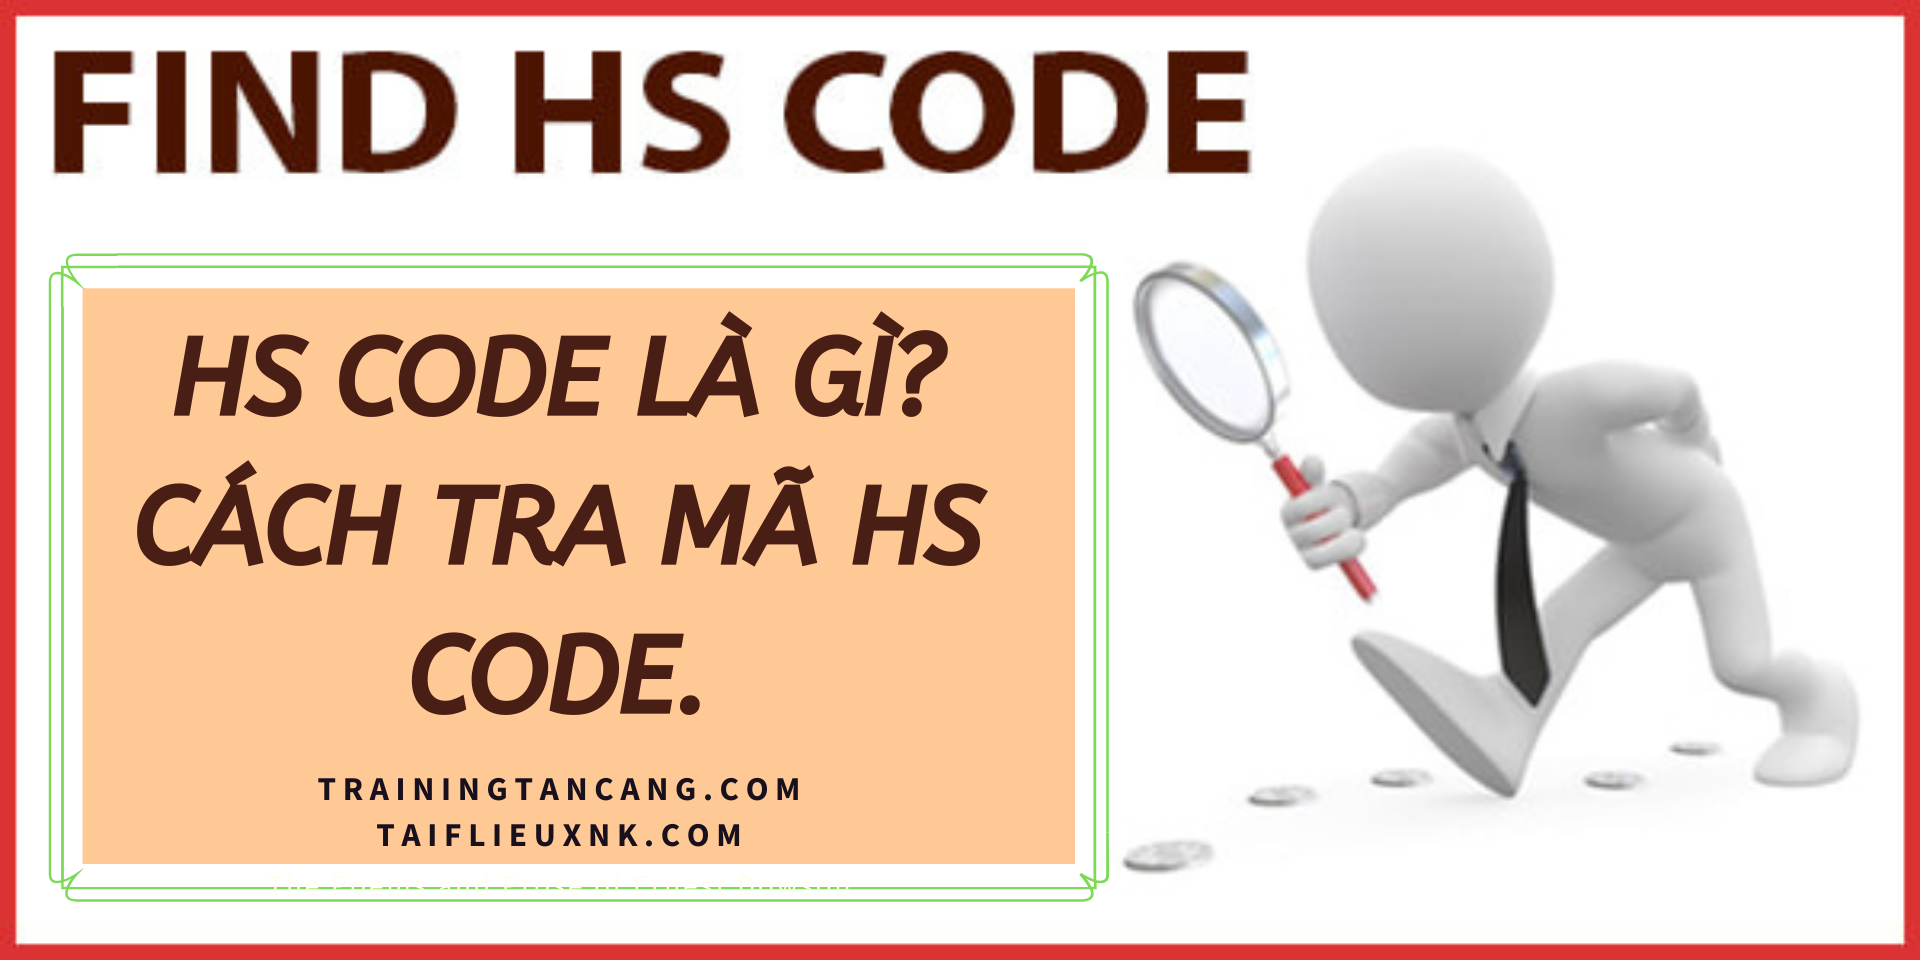 Mã Hs Code Là Gì? Cách Tra Mã HS Code.